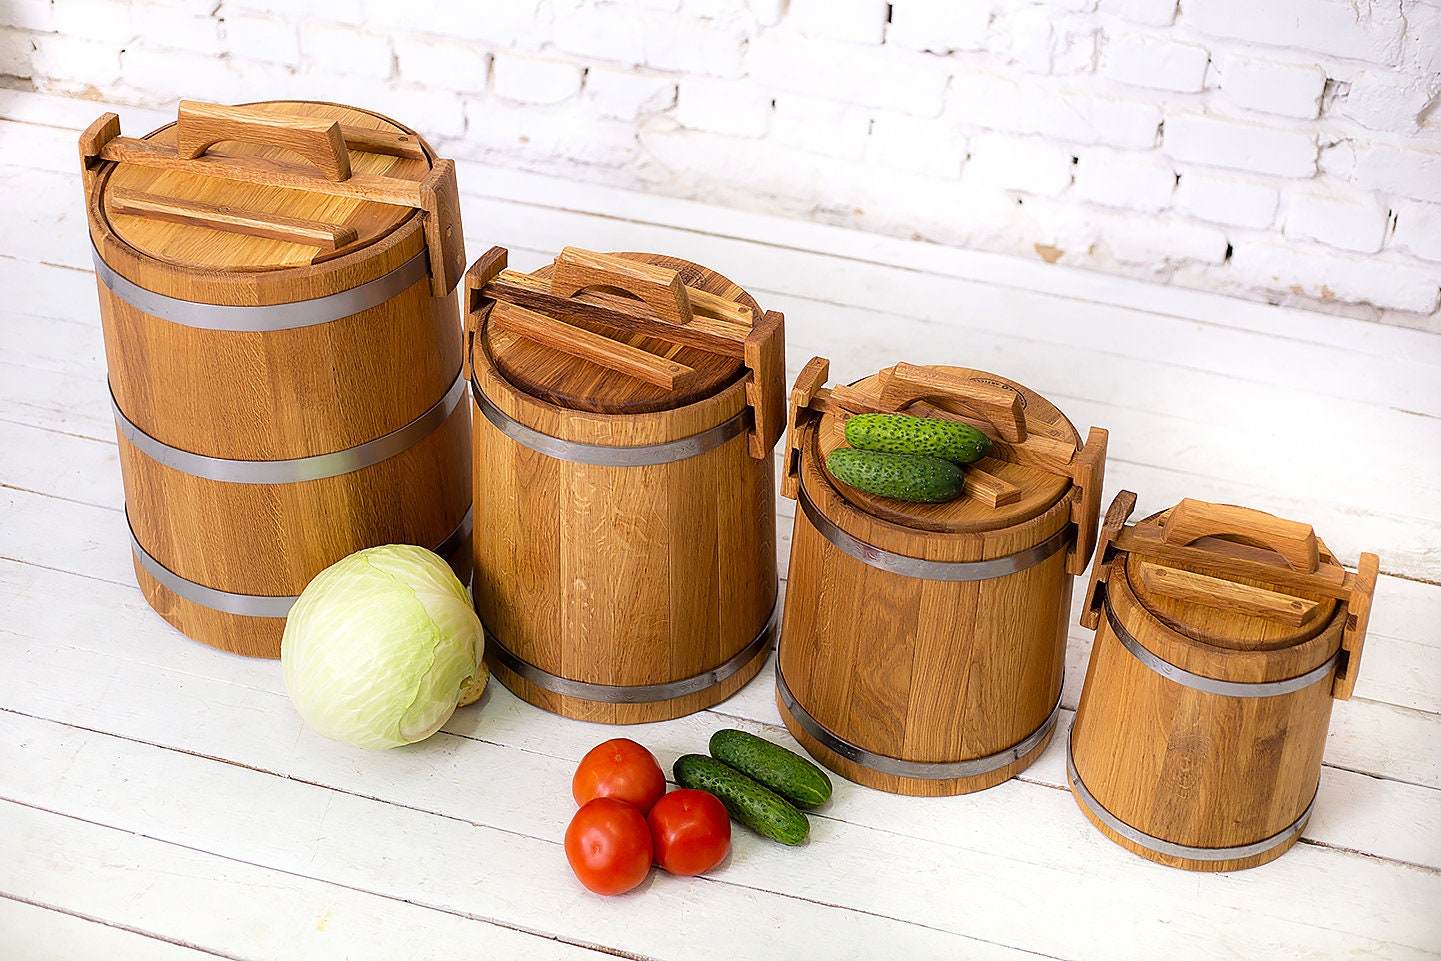 Wooden Pickling Crock for Fermentation Details about   Oak Bucket for Pickles Pickle Pot 